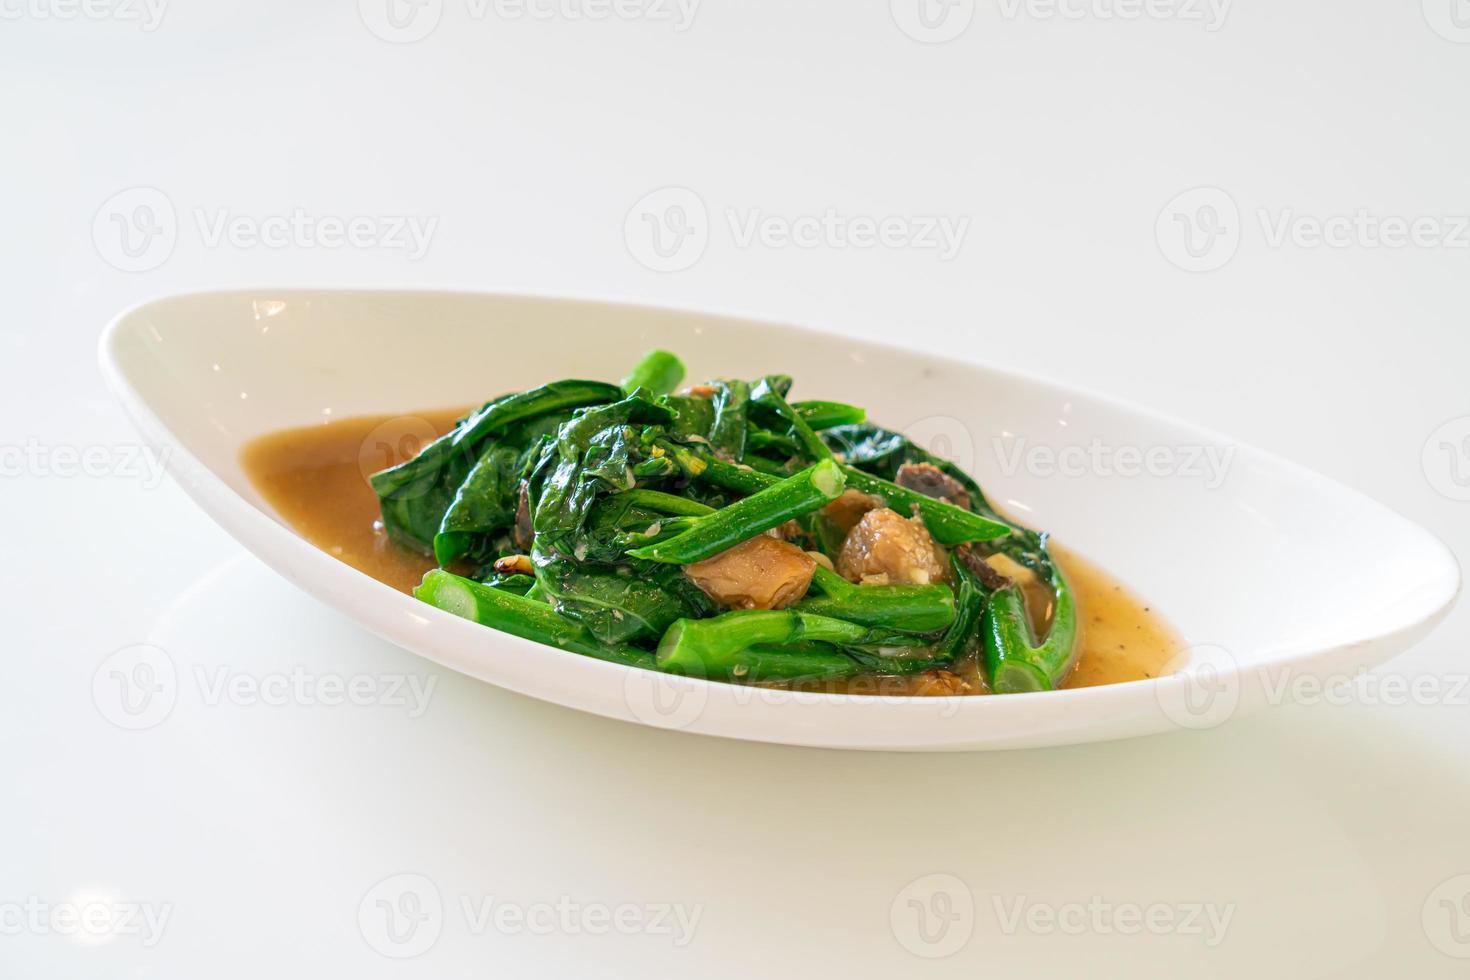 Peixe salgado frito com couve chinesa - comida asiática foto